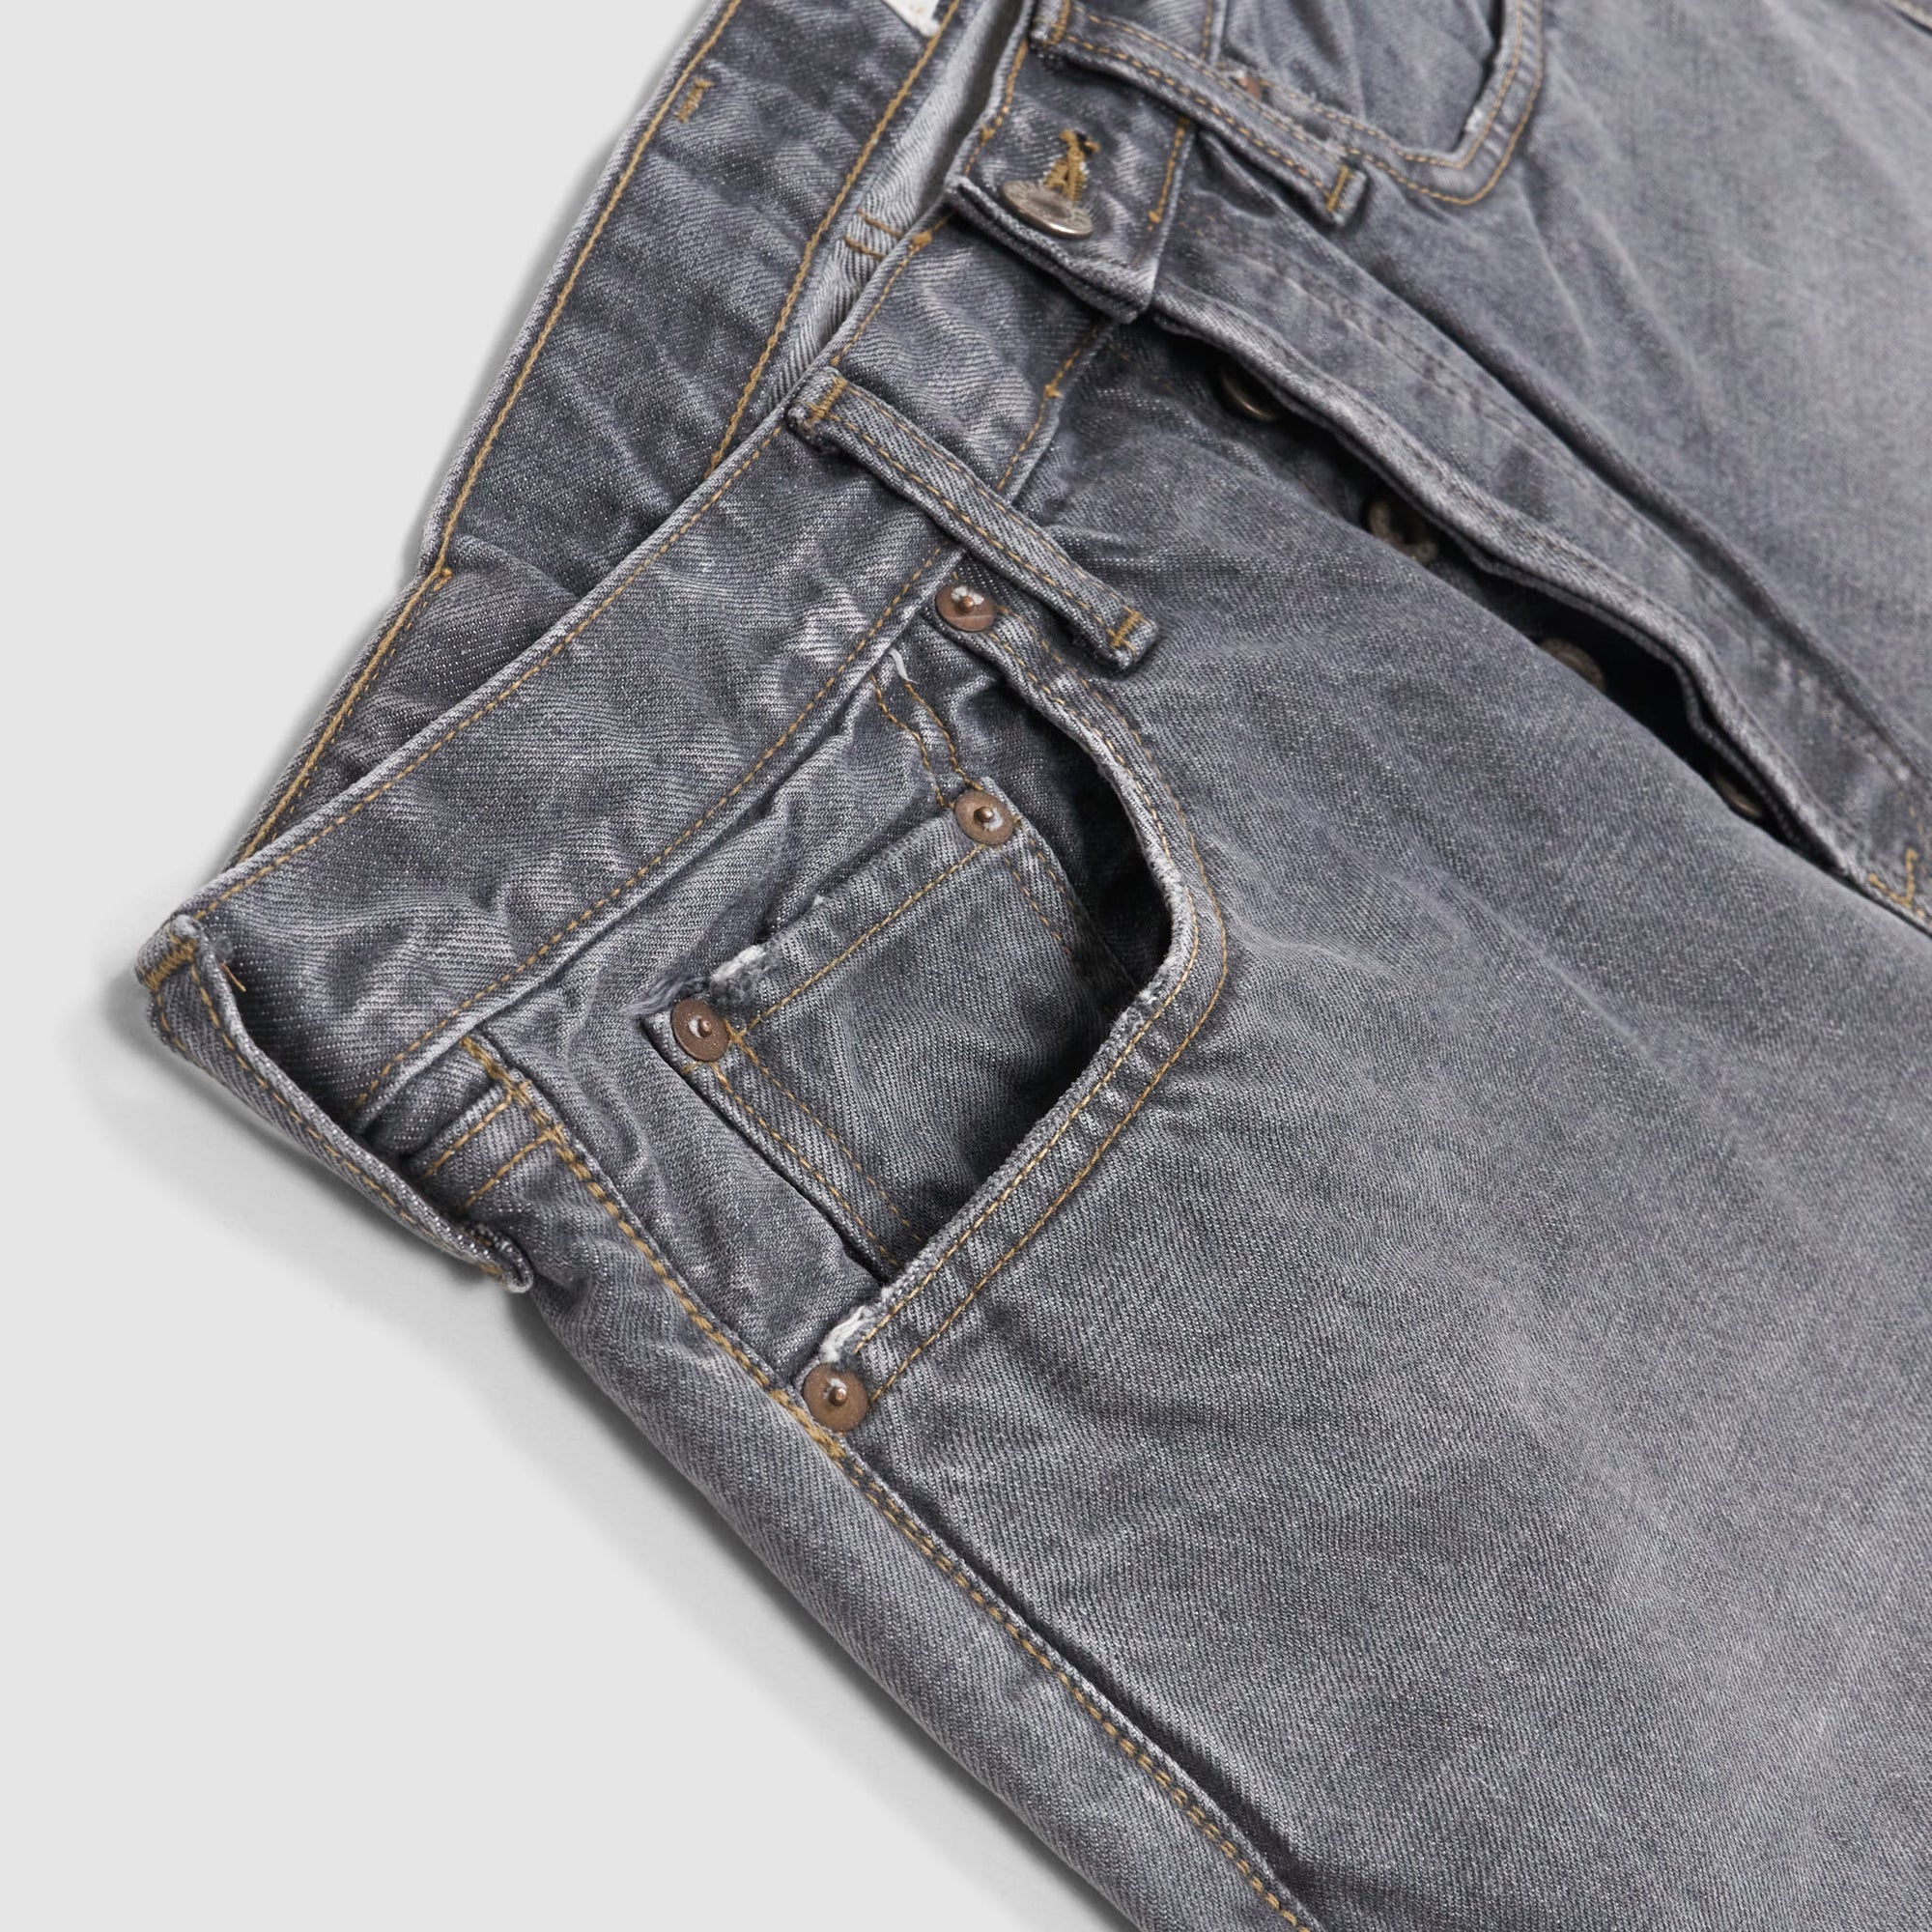 Kapital 5-Pocket Black Hard Washed Denim Jeans - DeeCee style